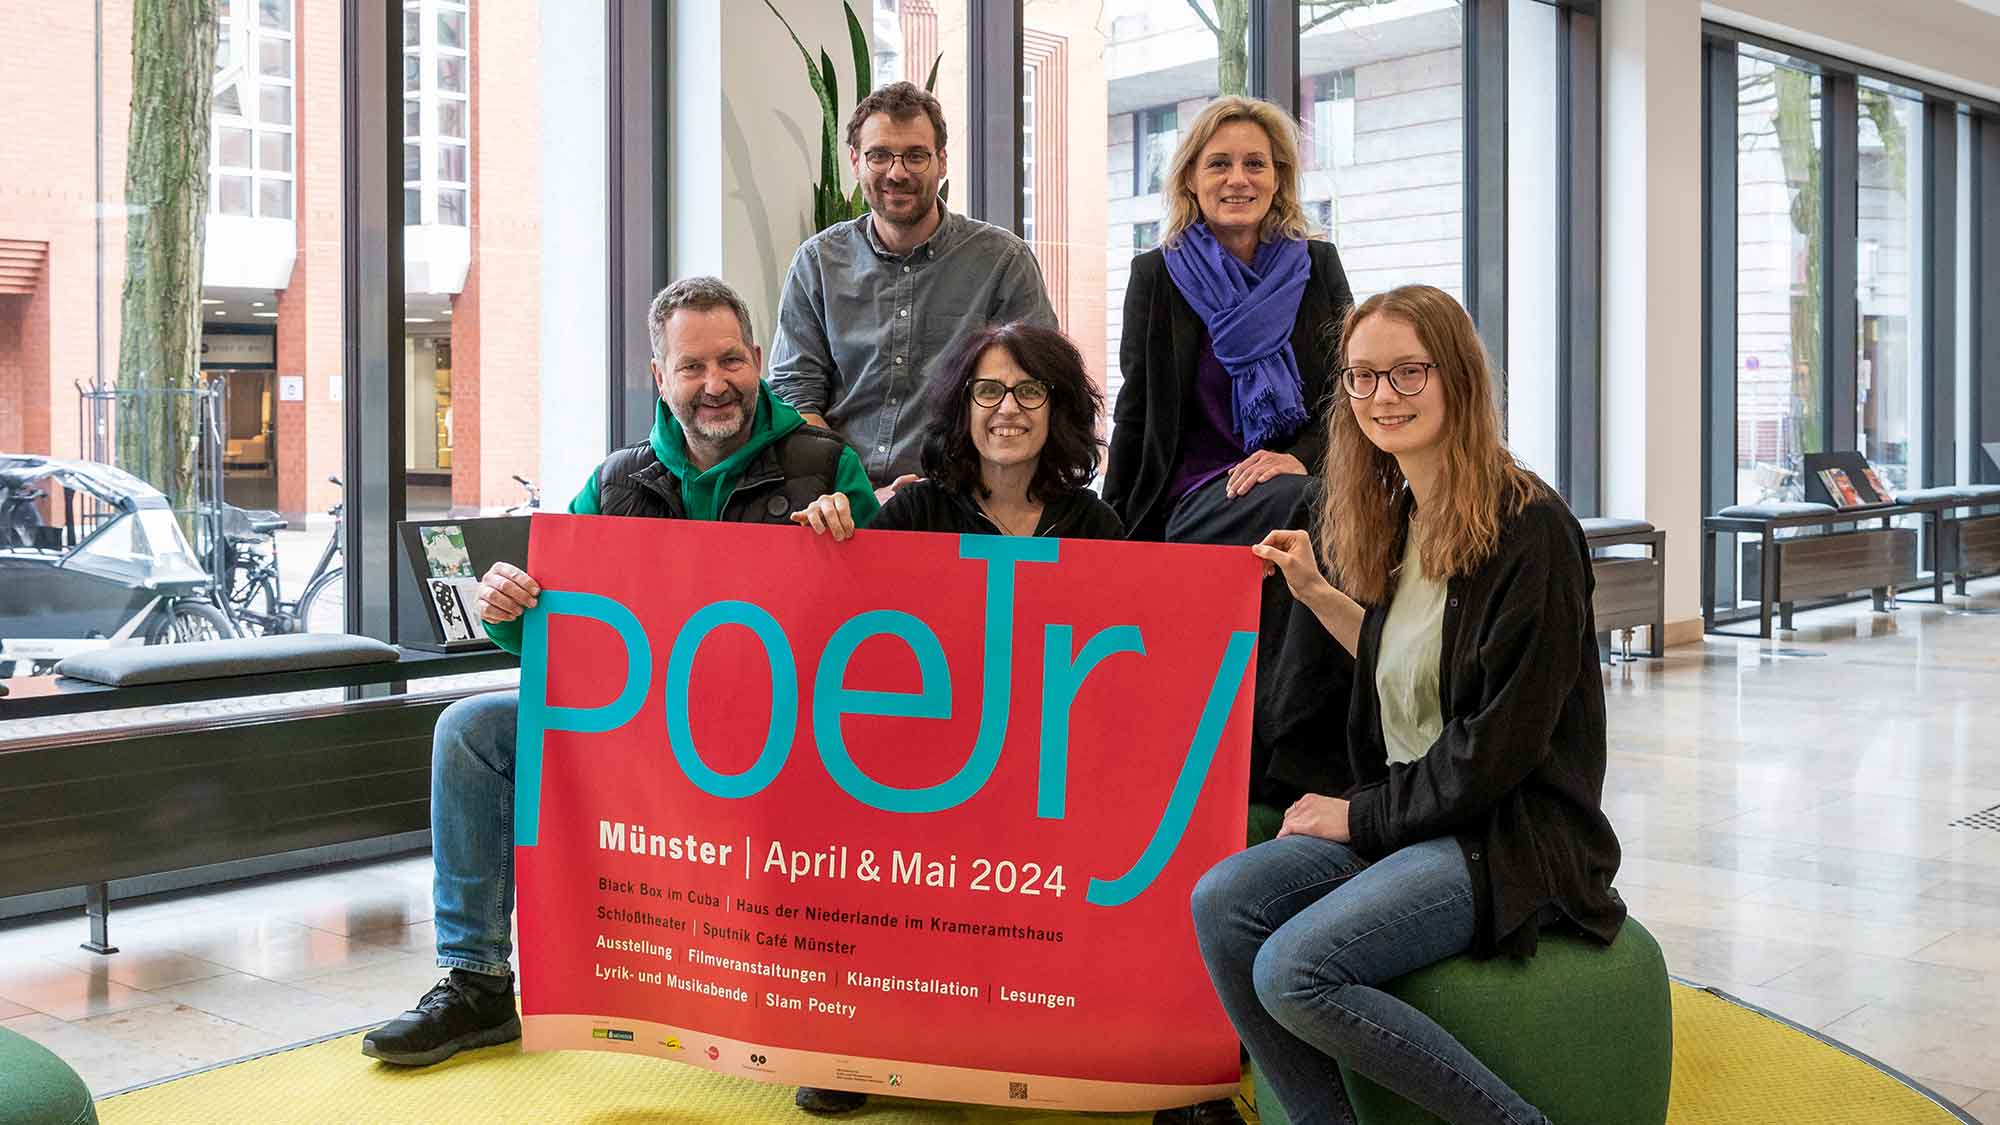 Münster: Lyrik hören, sehen und erleben – Programm »Poetry 2024« vom 8. April bis zum 12. Mai 2024 übersetzt Lyrik in andere Kunstformen